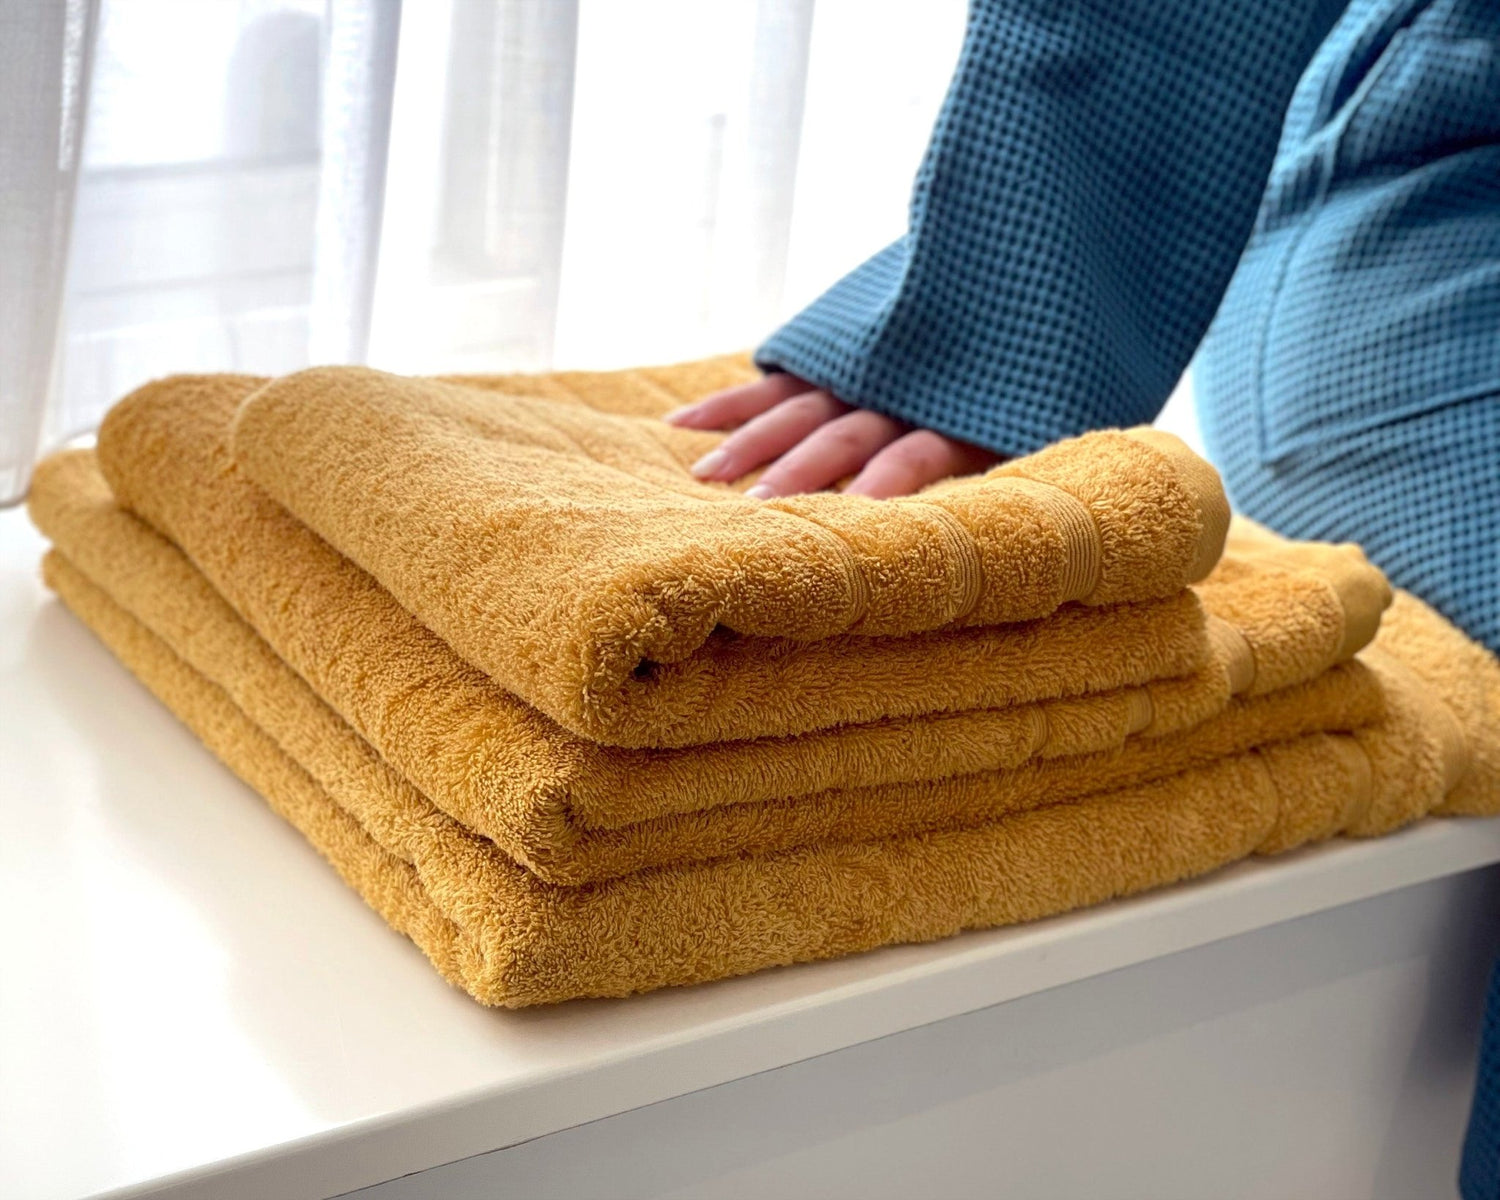 3 gule håndklæder, der ligger i en vindueskarm.En person sidder ved siden af i en blå badekåbe med hånden på håndklæderne.